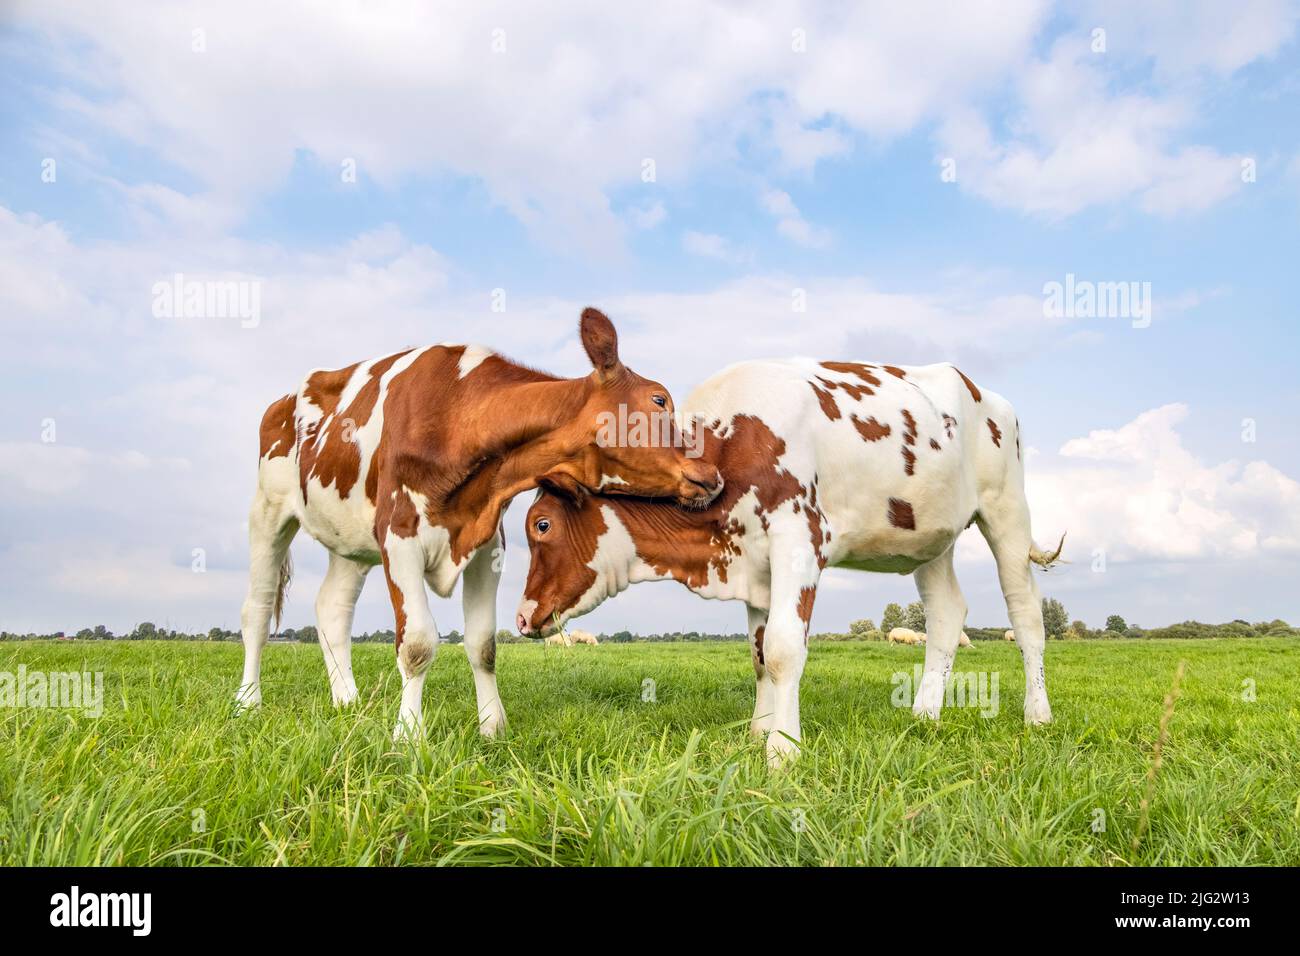 Les vaches aiment jouer en cuddling dans un champ sous un ciel bleu, deux veaux frottant les têtes, avec amour et ludique, de combat ou de jeu Banque D'Images